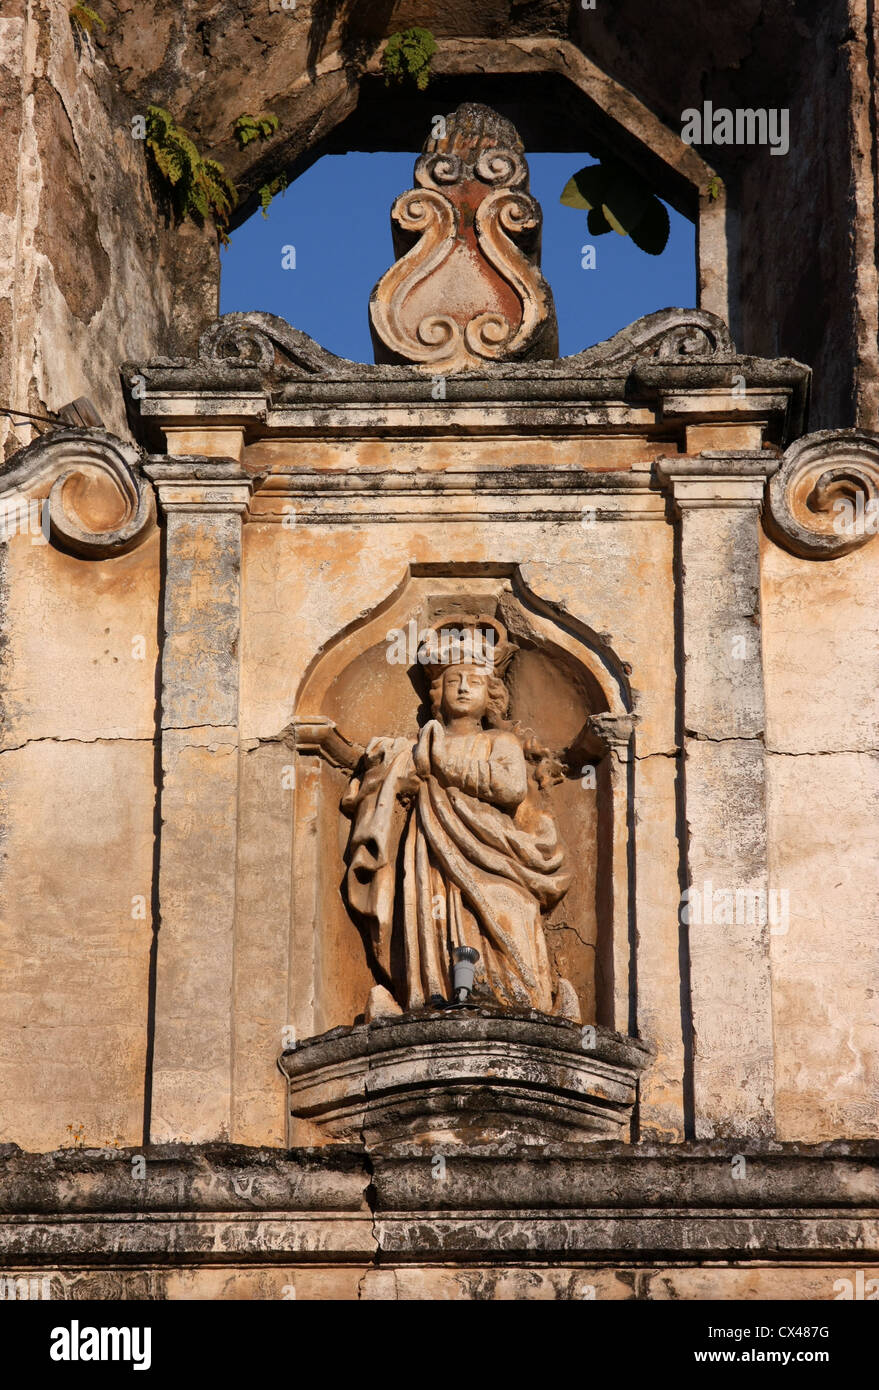 Estatua en ornamentado monasterio en ruinas en el Patrimonio Mundial de la UNESCO [Sitio] de Antigua, Guatemala, América Central Foto de stock